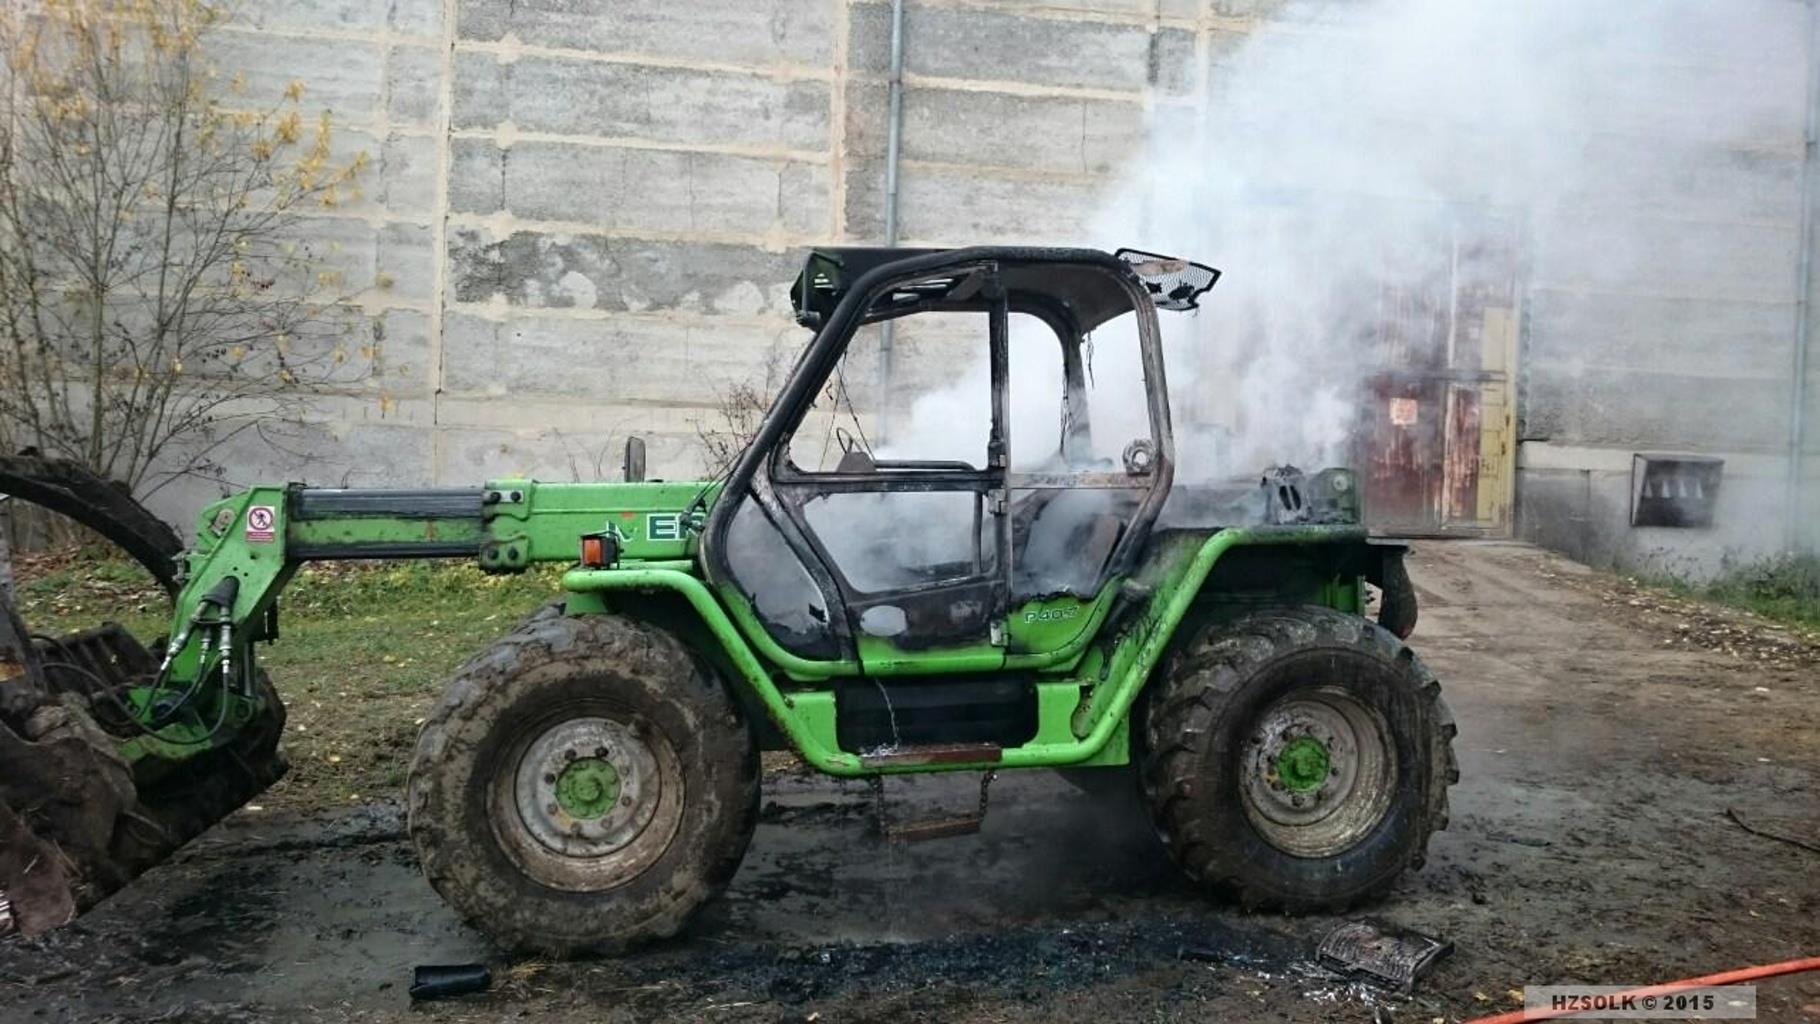 13-11-2015 Požár traktorového nakladače Vysoké Žibřidovice.jpg